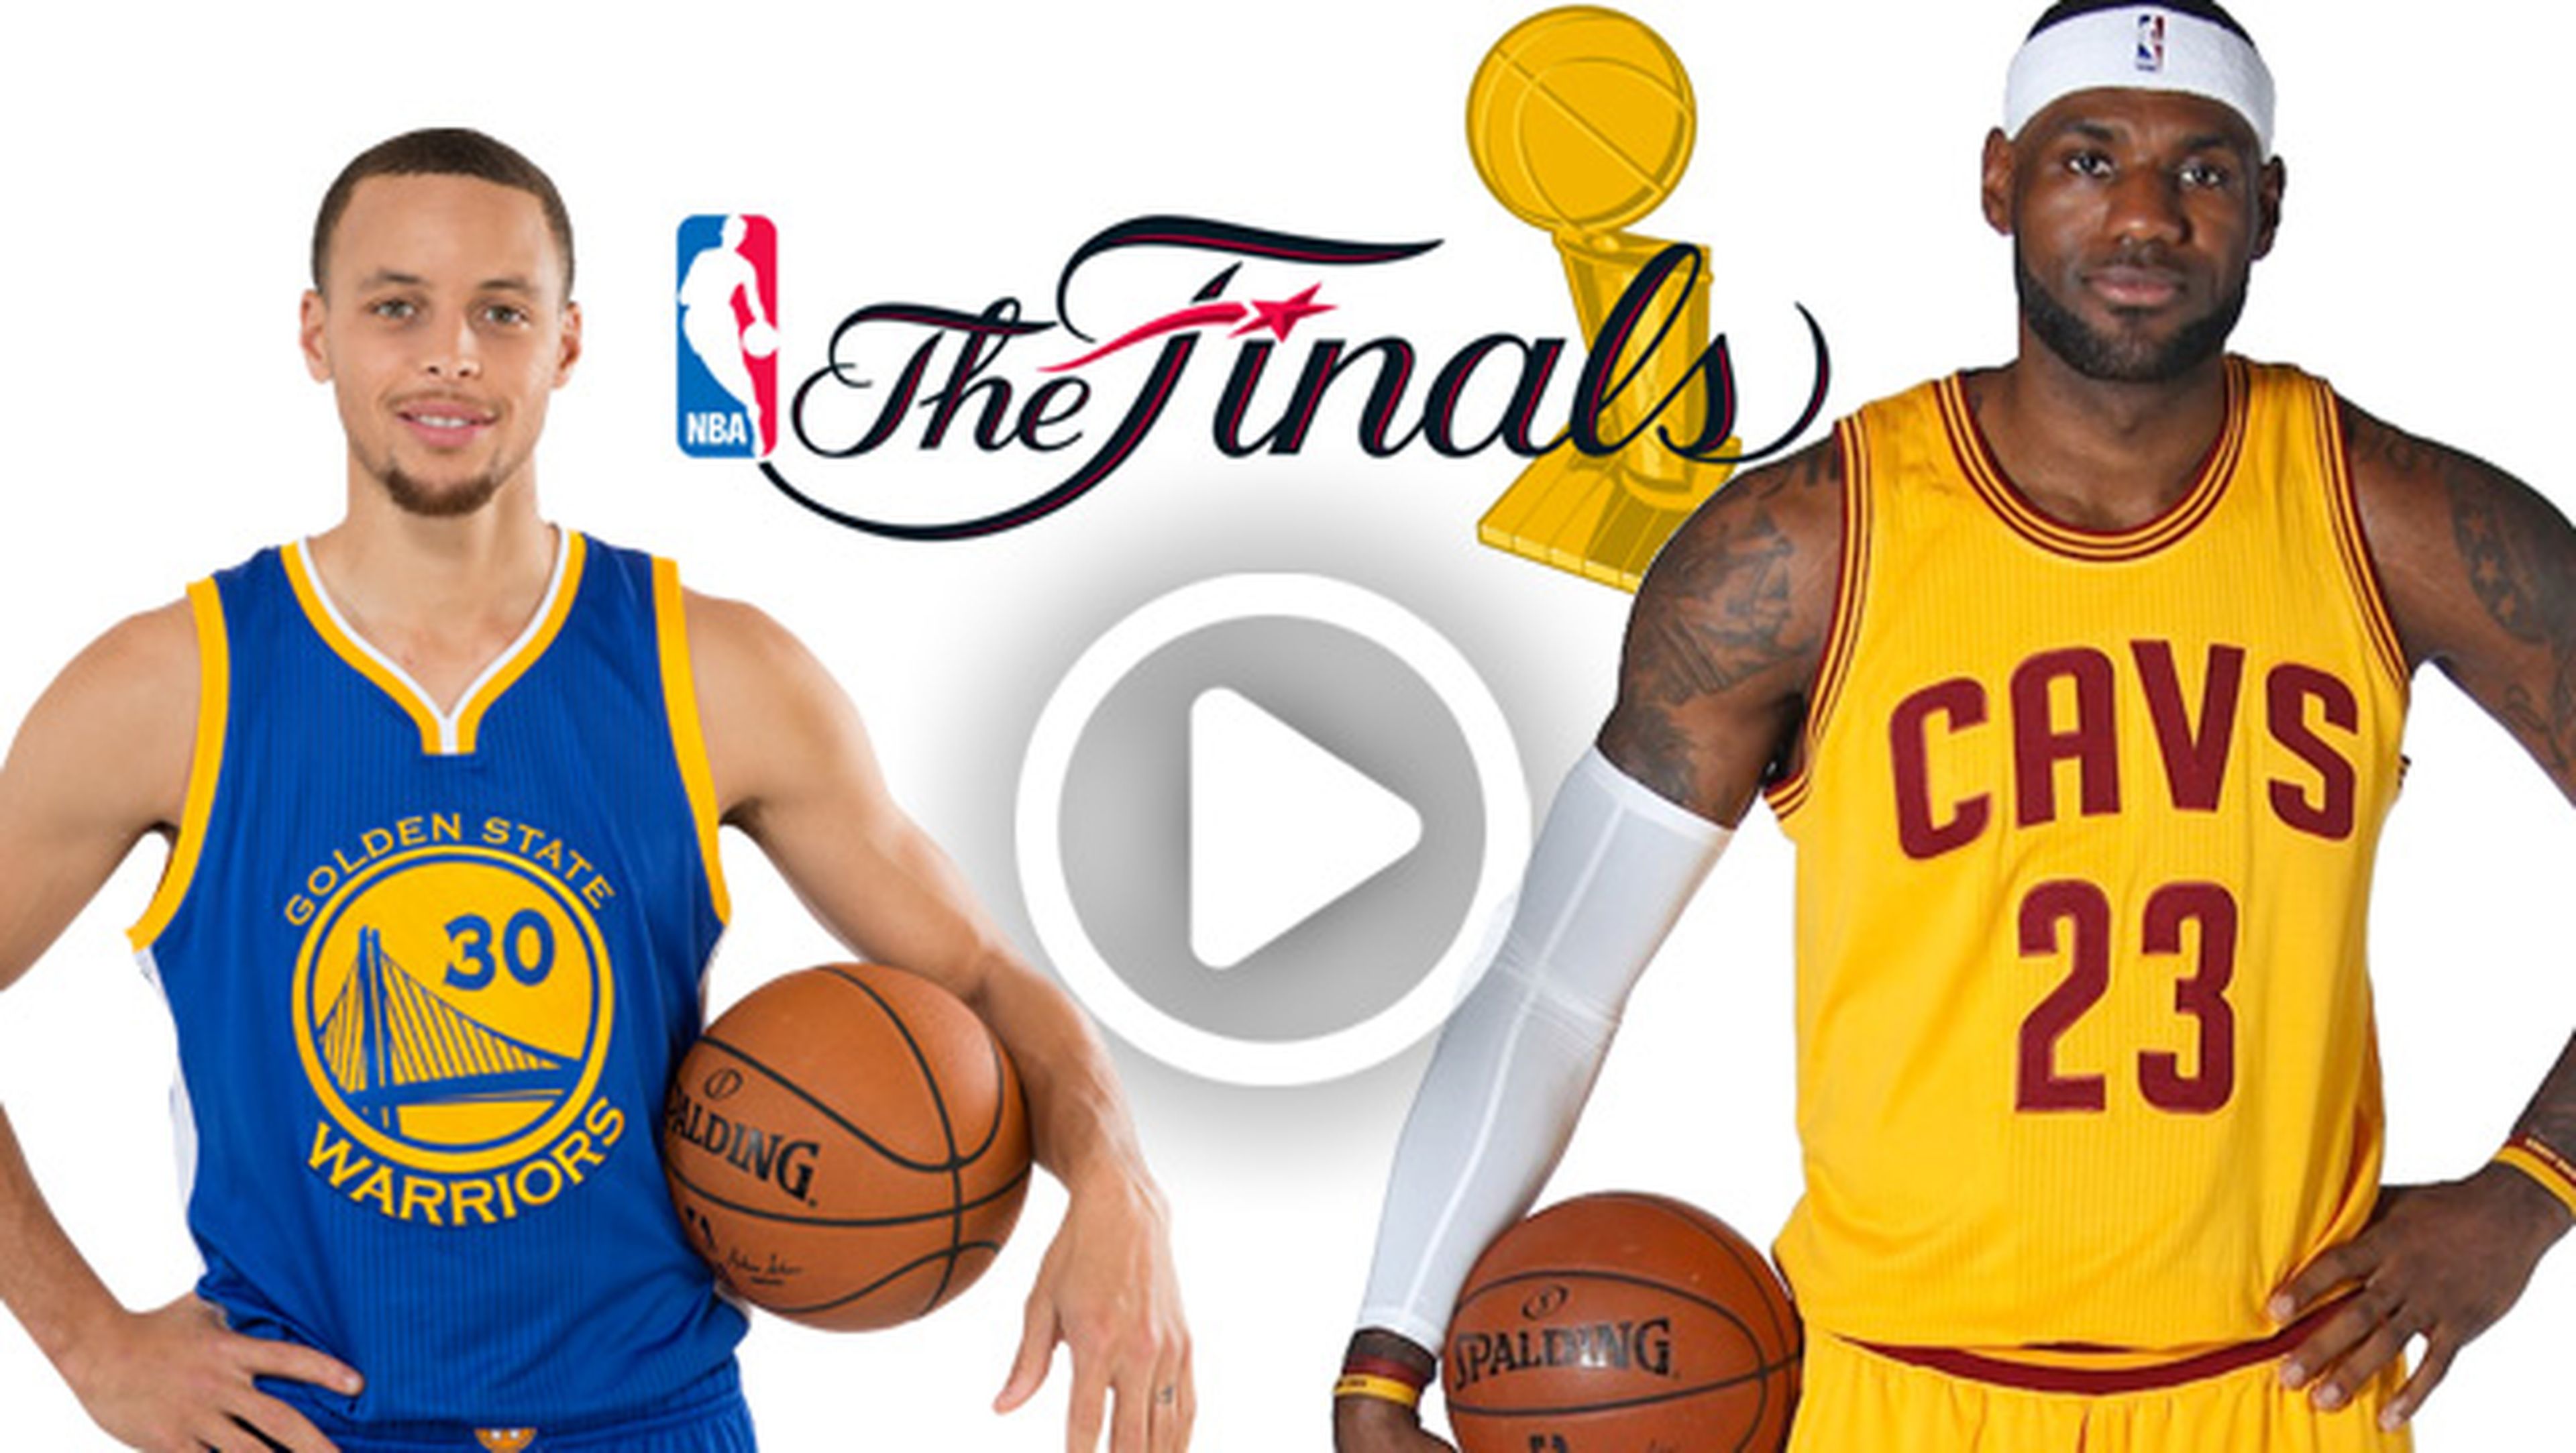 Ver online y en directo final de la NBA entre Golden State Warriors y Cleveland Cavaliers